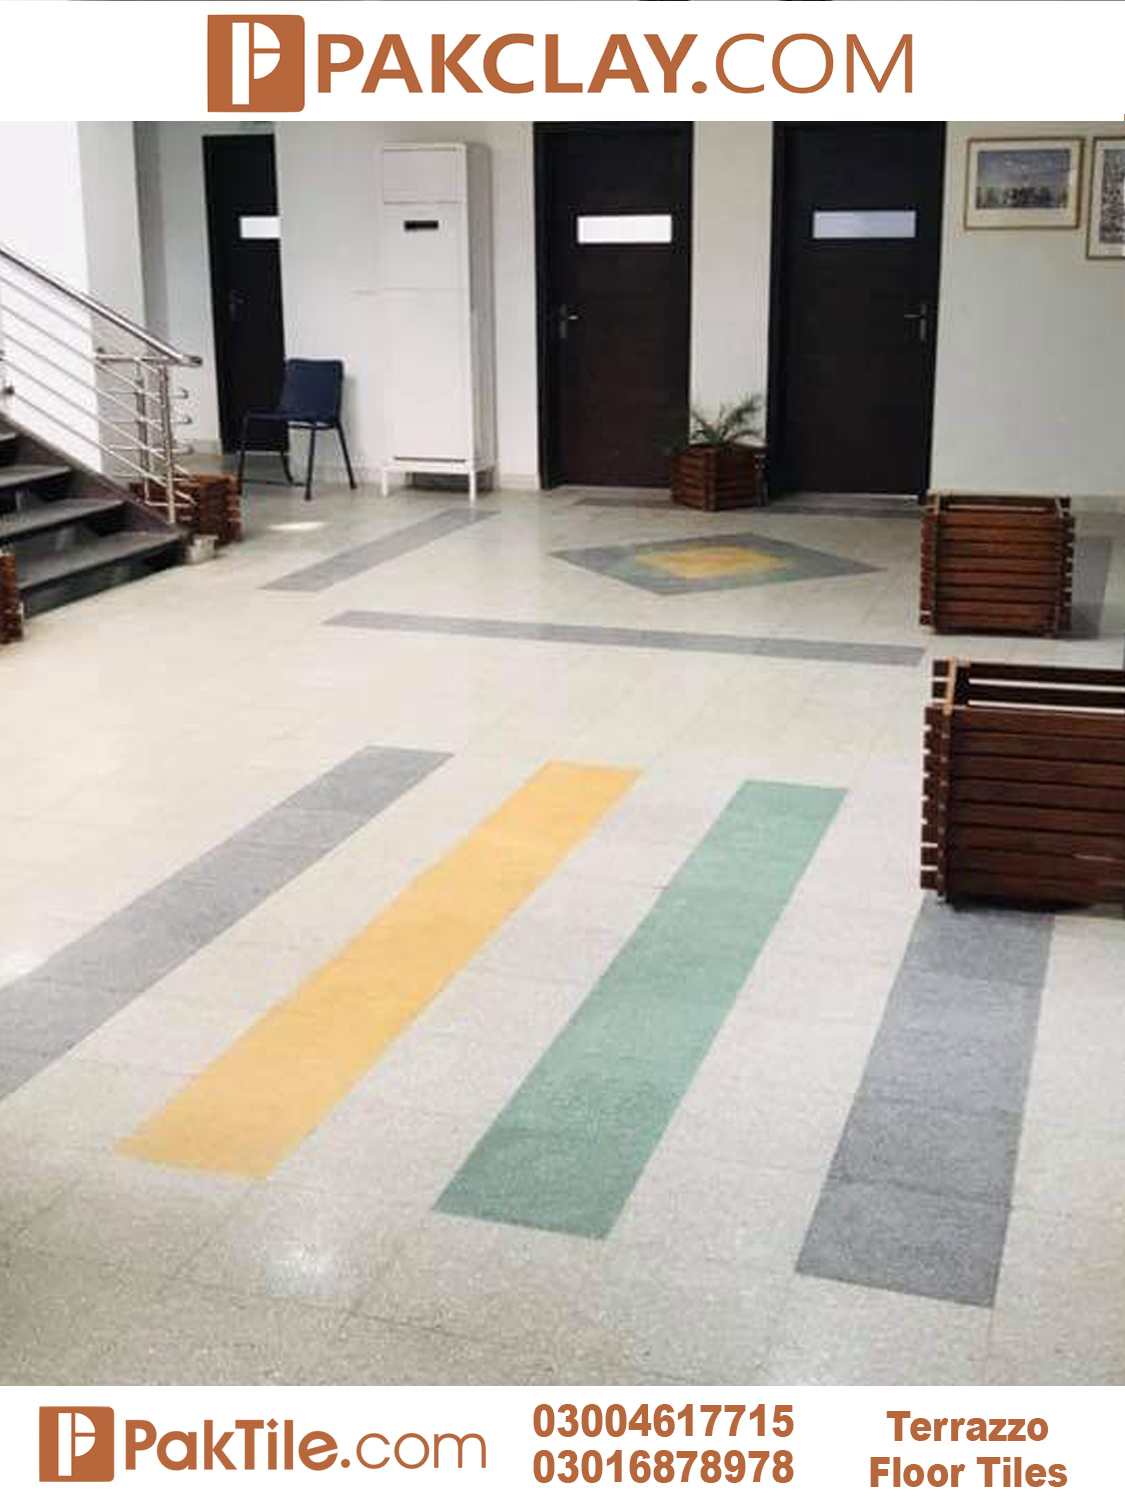 6 Terrazzo Flooring Tiles Islamabad